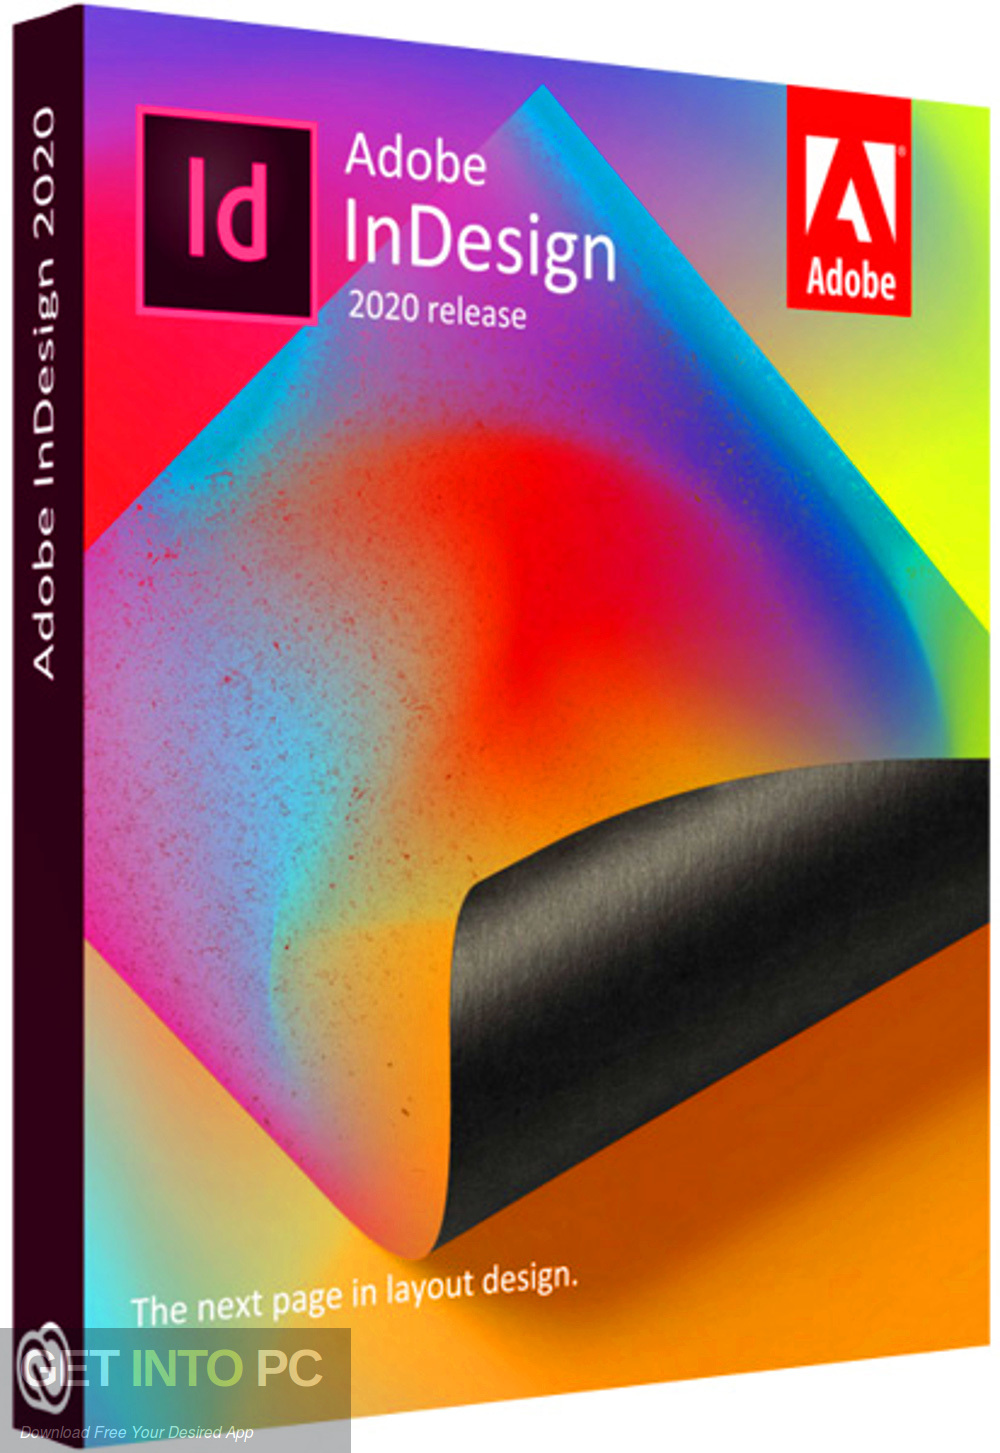 Adobe InDesign 2023 v18.4.0.56 download the last version for windows